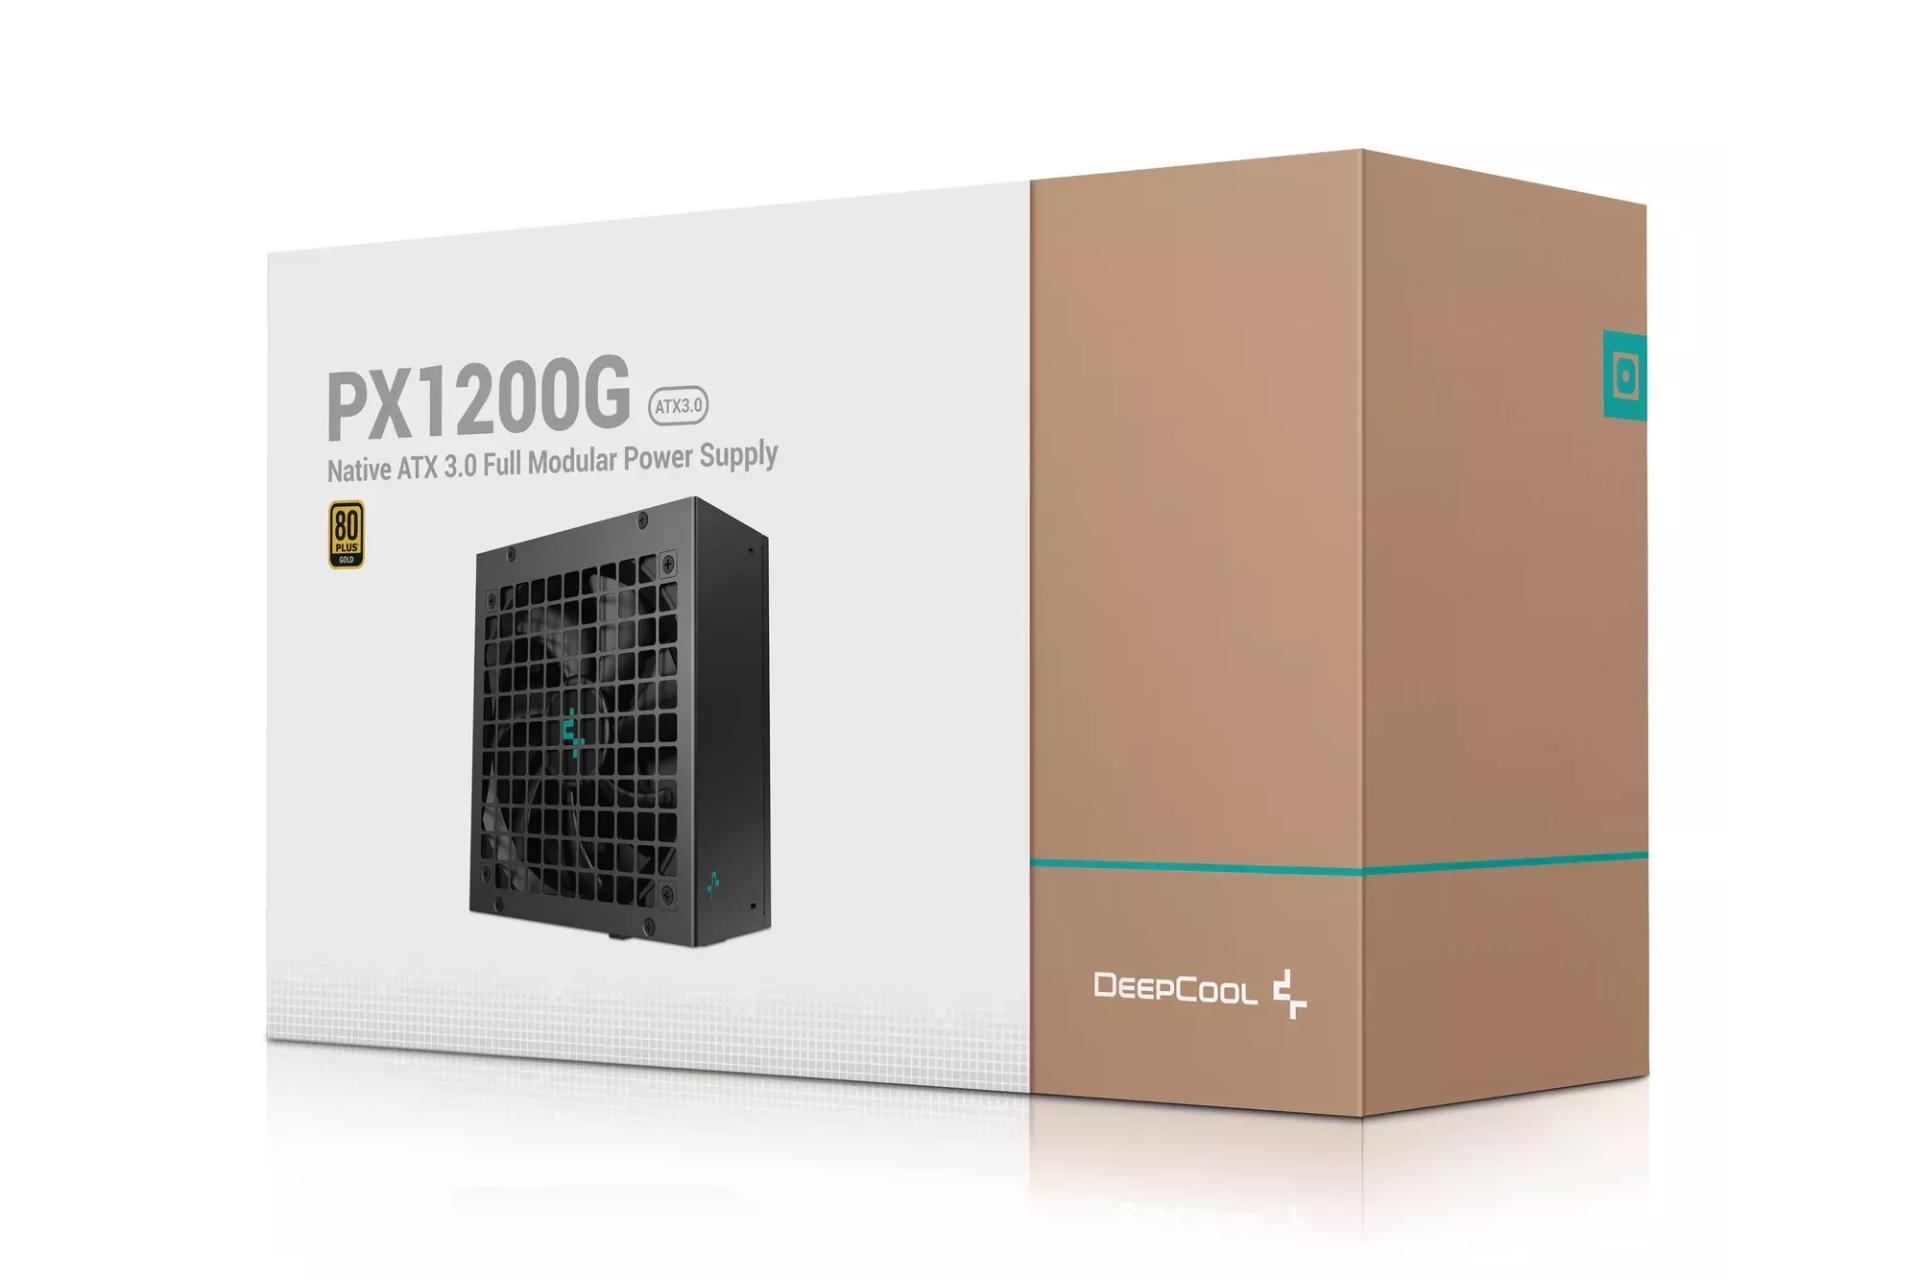 جعبه پاور کامپیوتر دیپ کول PX1200G با توان 1200 وات